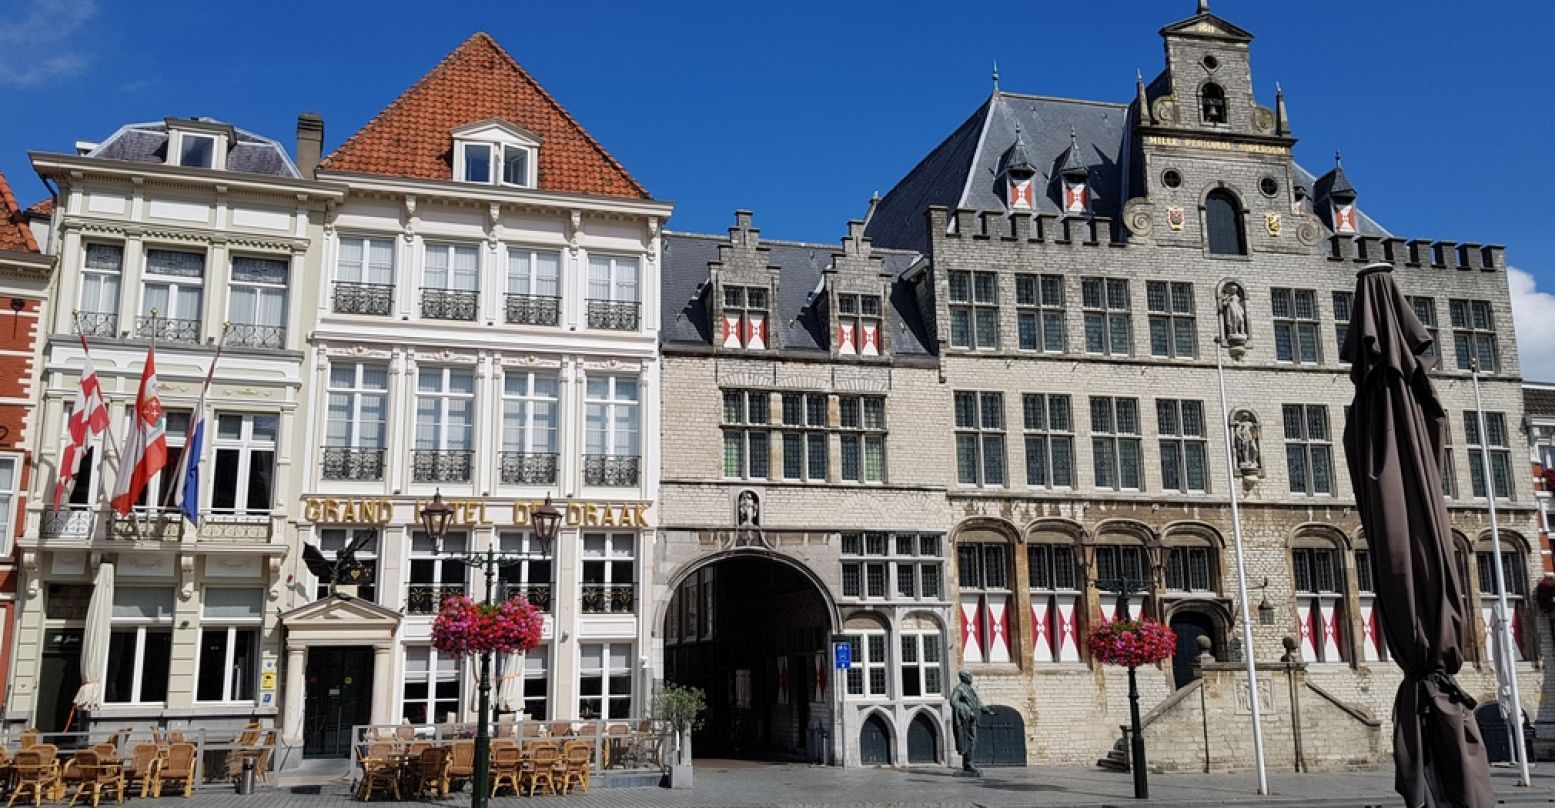 Twee monumenten op de Grote Markt: rechts het stadhuis en links het oudste hotel van Nederland, De Draak. Foto: DagjeWeg.NL / Tonny van Oosten